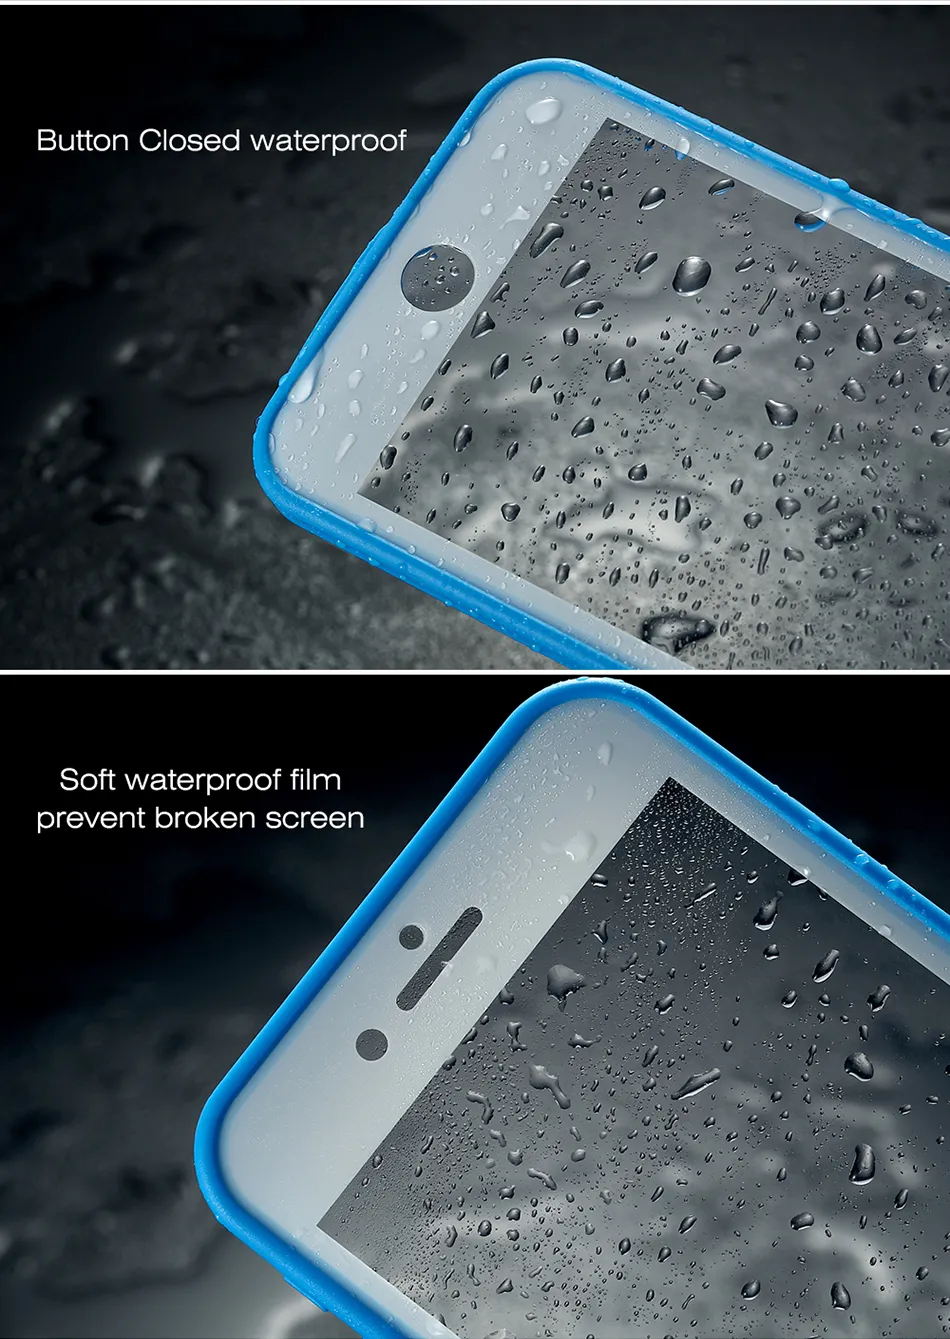 جراب iPhone 7 6 6s 8 حافظة مقاومة للماء وشاشة قابلة للمس لهاتف iPhone X 7 6s Plus غطاء حماية كامل نحيف للغاية 360